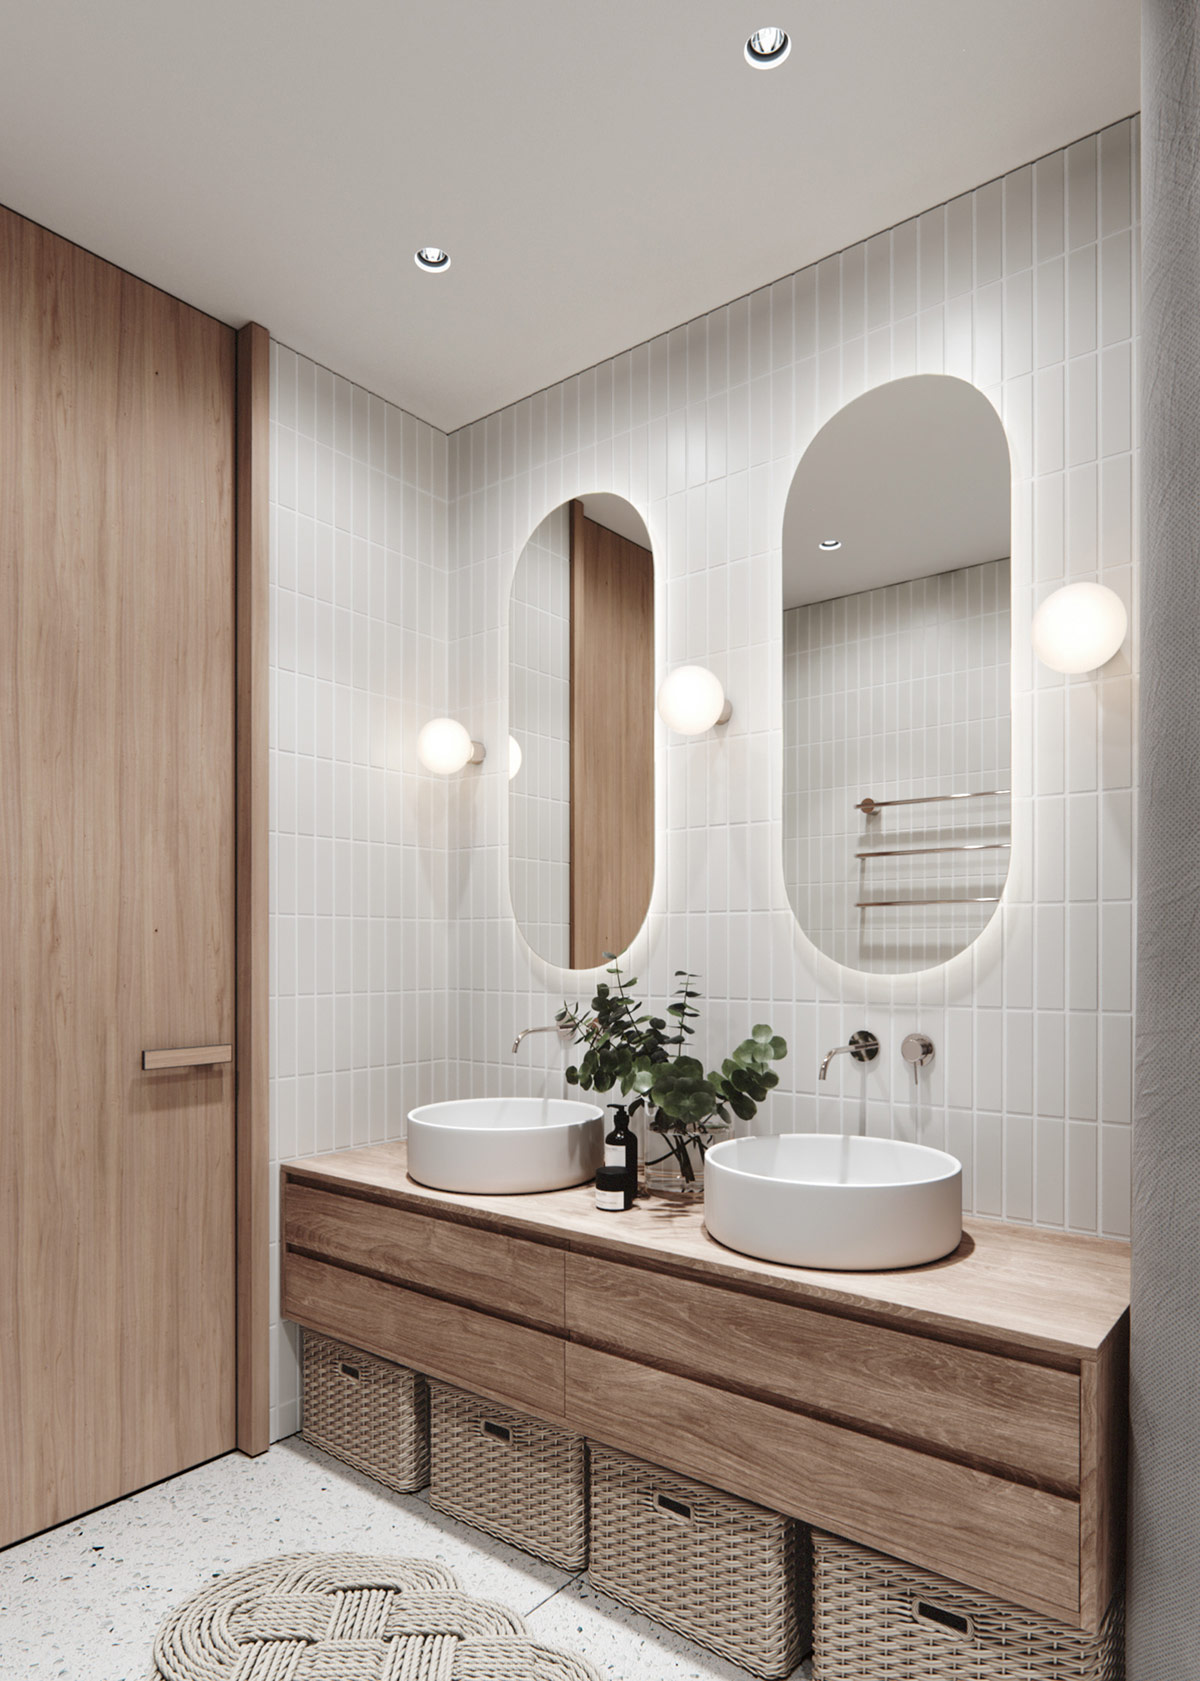 Đèn hình cầu đơn giản kết hợp với ánh sáng đèn LED bao quanh gương soi khiến phòng tắm bừng sáng lấp lánh.